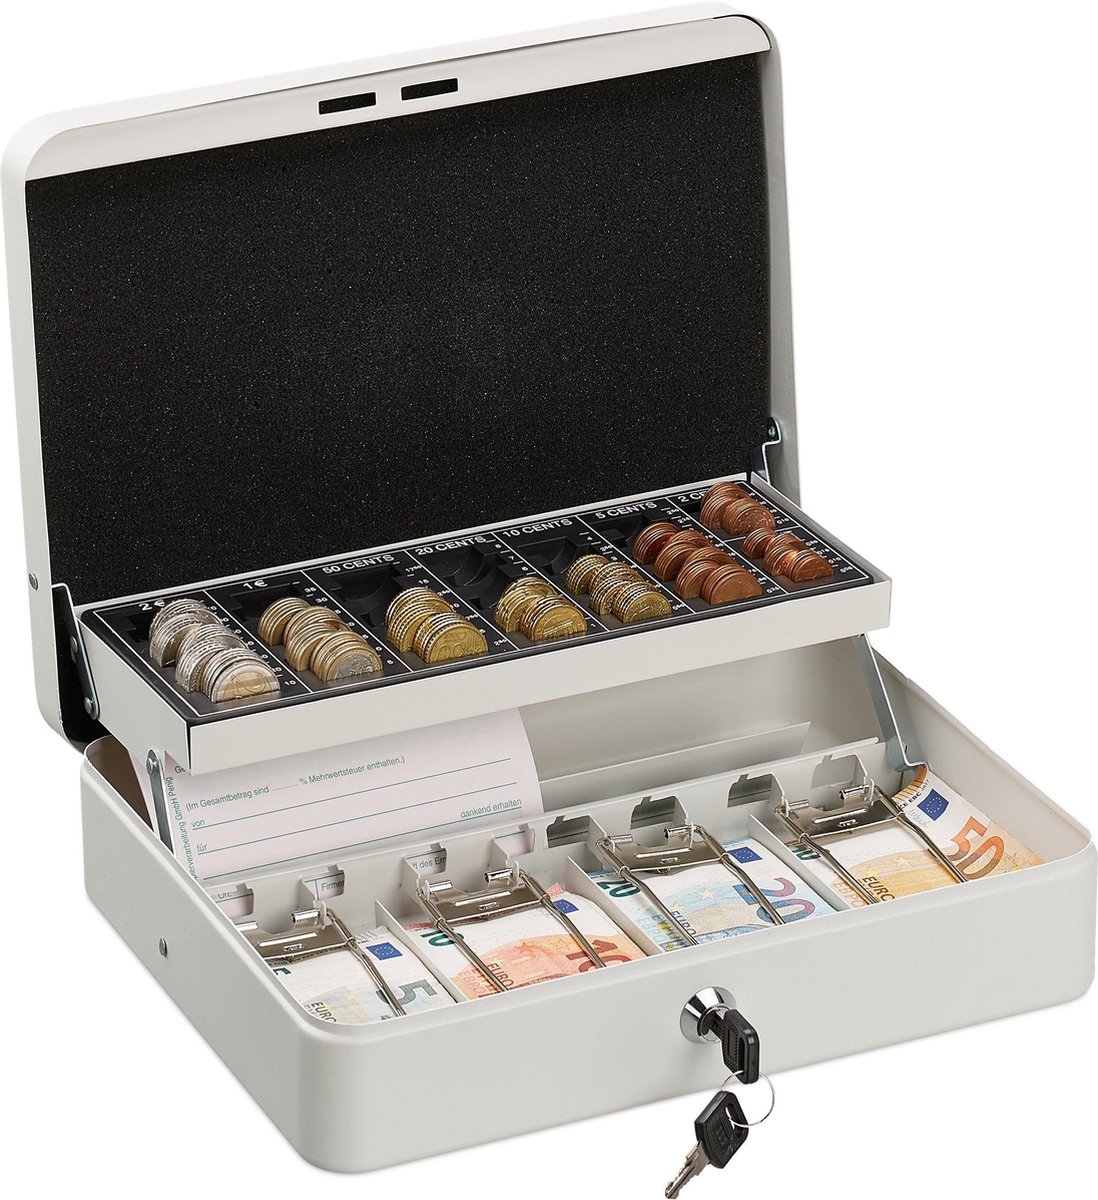 Relaxdays geldkistje met slot - munten sorteren - metalen geldkist - geldkluisje - sleutel - wit - Relaxdays